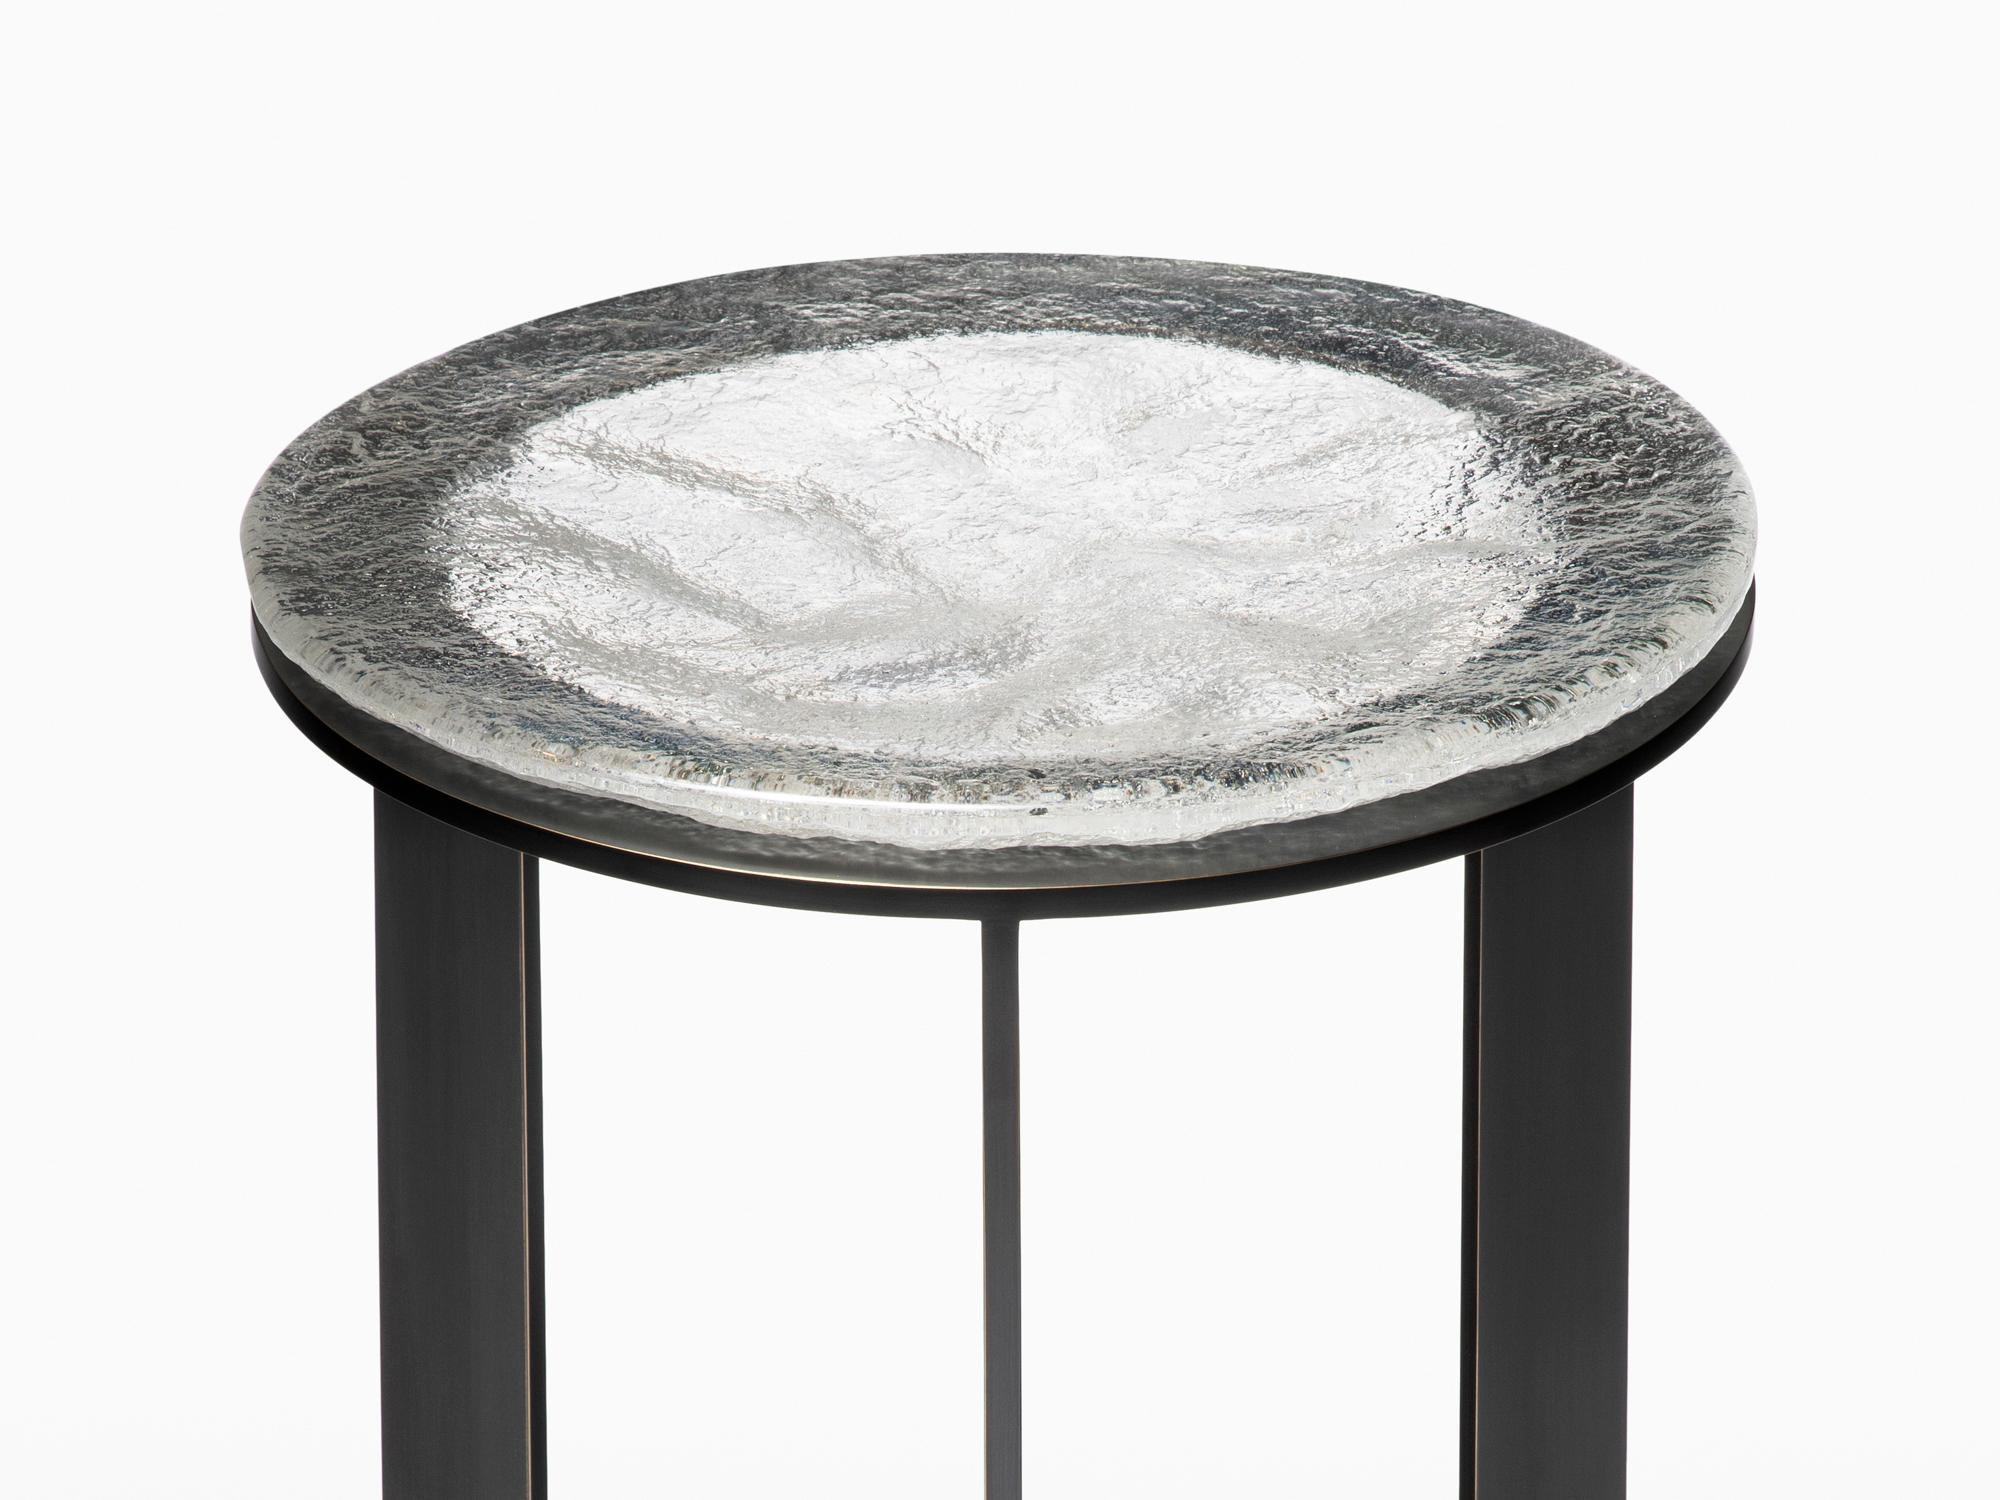 La table d'appoint Kepler se distingue par son verre coulé au sable et son travail de métal. Le plateau en verre coulé est produit à l'aide d'un procédé de coulage à la louche où le verre fondu est versé dans un moule en sable par des artisans